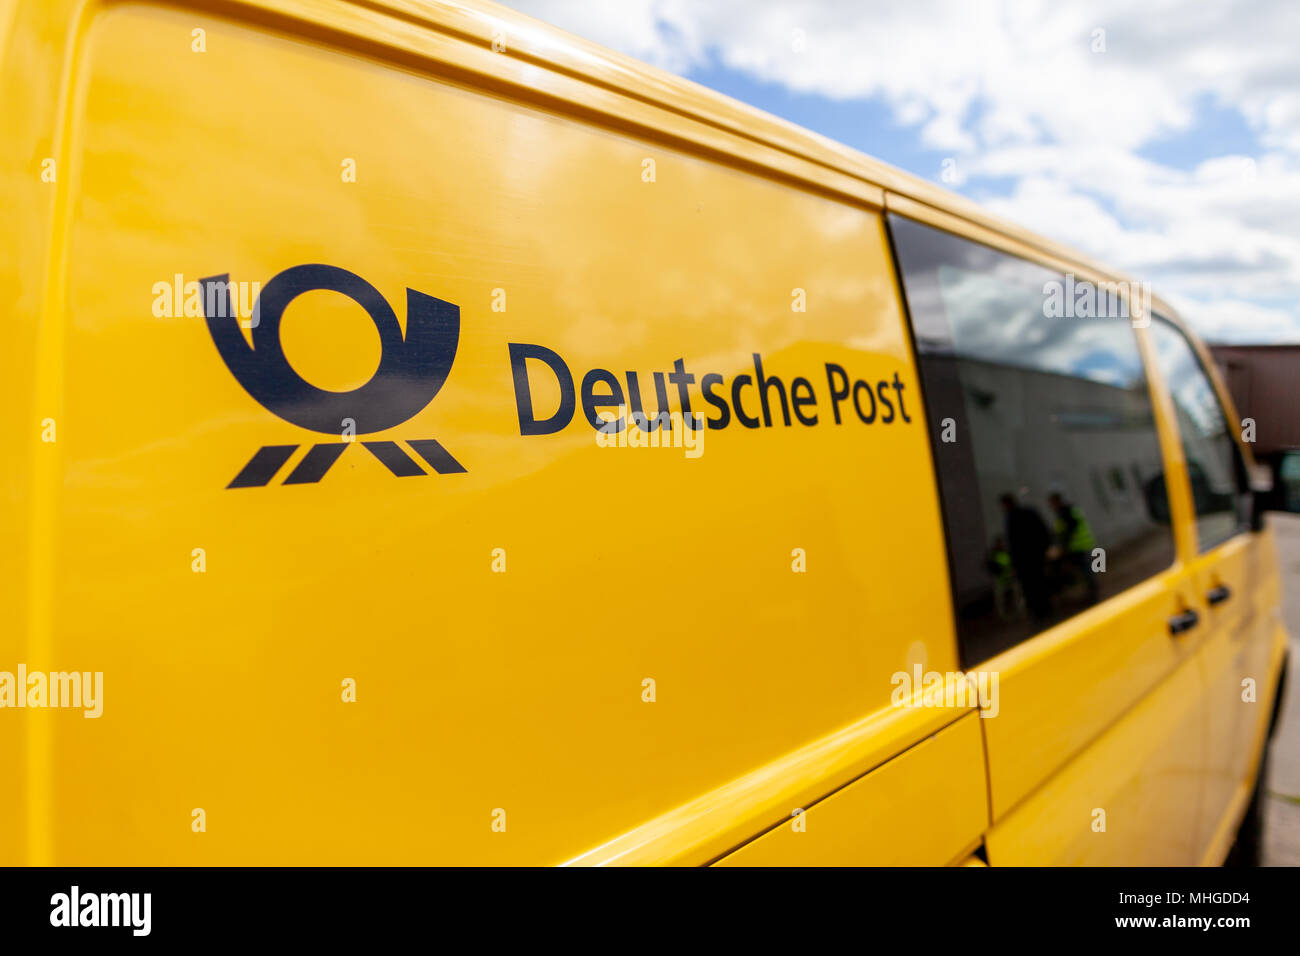 Offenbach/Deutschland Mai 1, 2018: Transport Fahrzeug Volkswagen T5 von der Deutschen Post (Deutsche Post) steht auf der Straße. Stockfoto